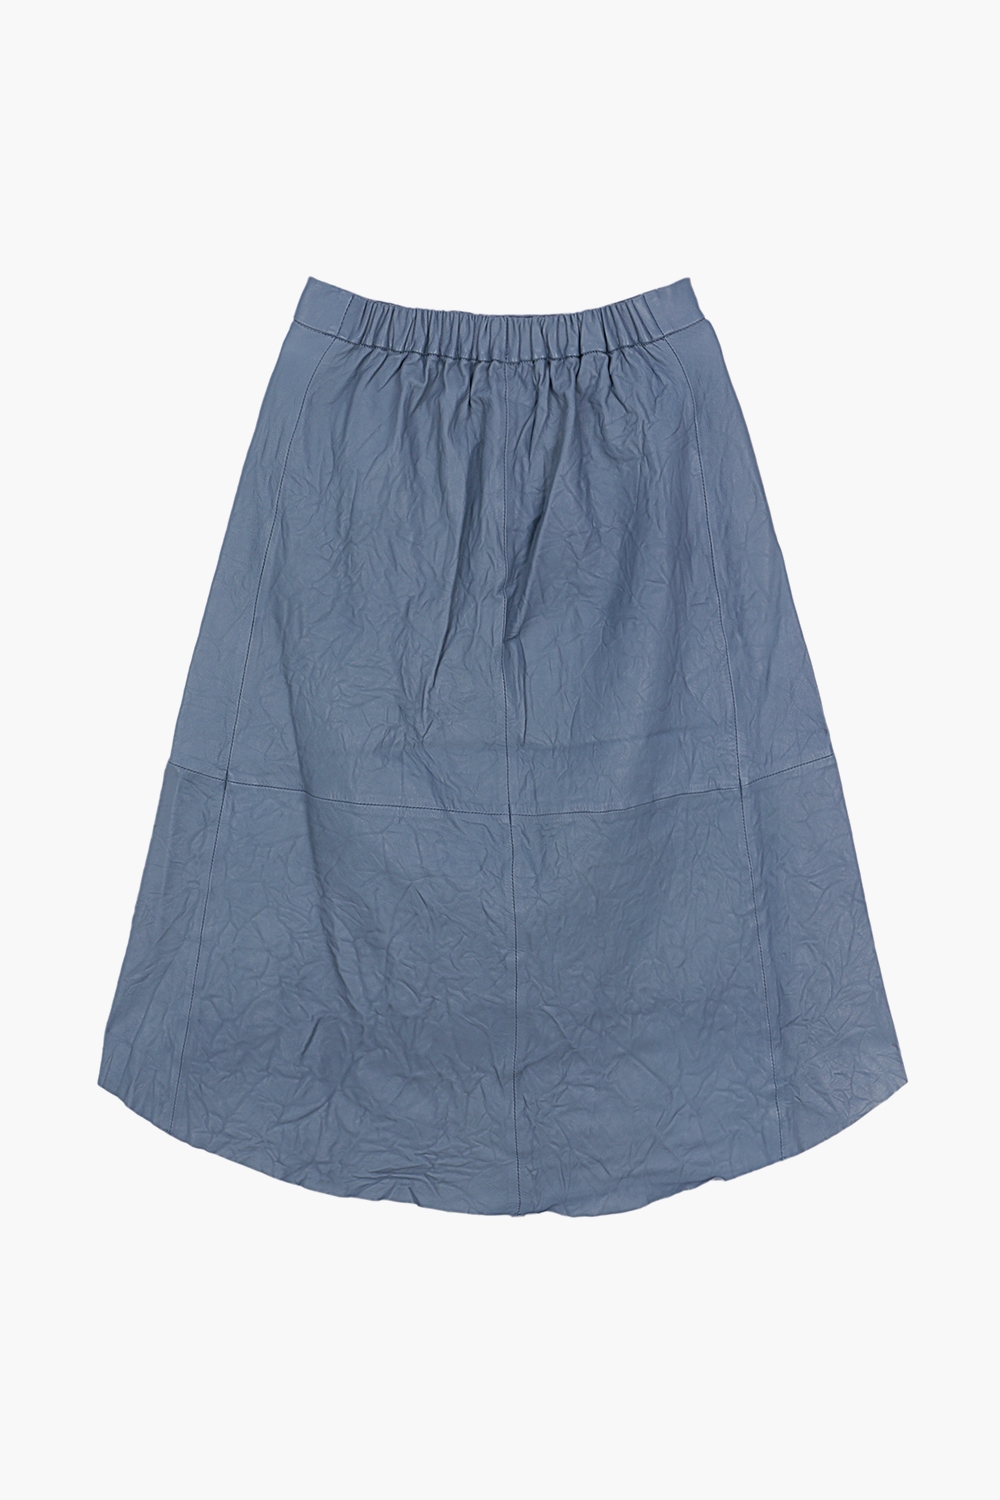 Joeslin Cuir Froisse Skirt